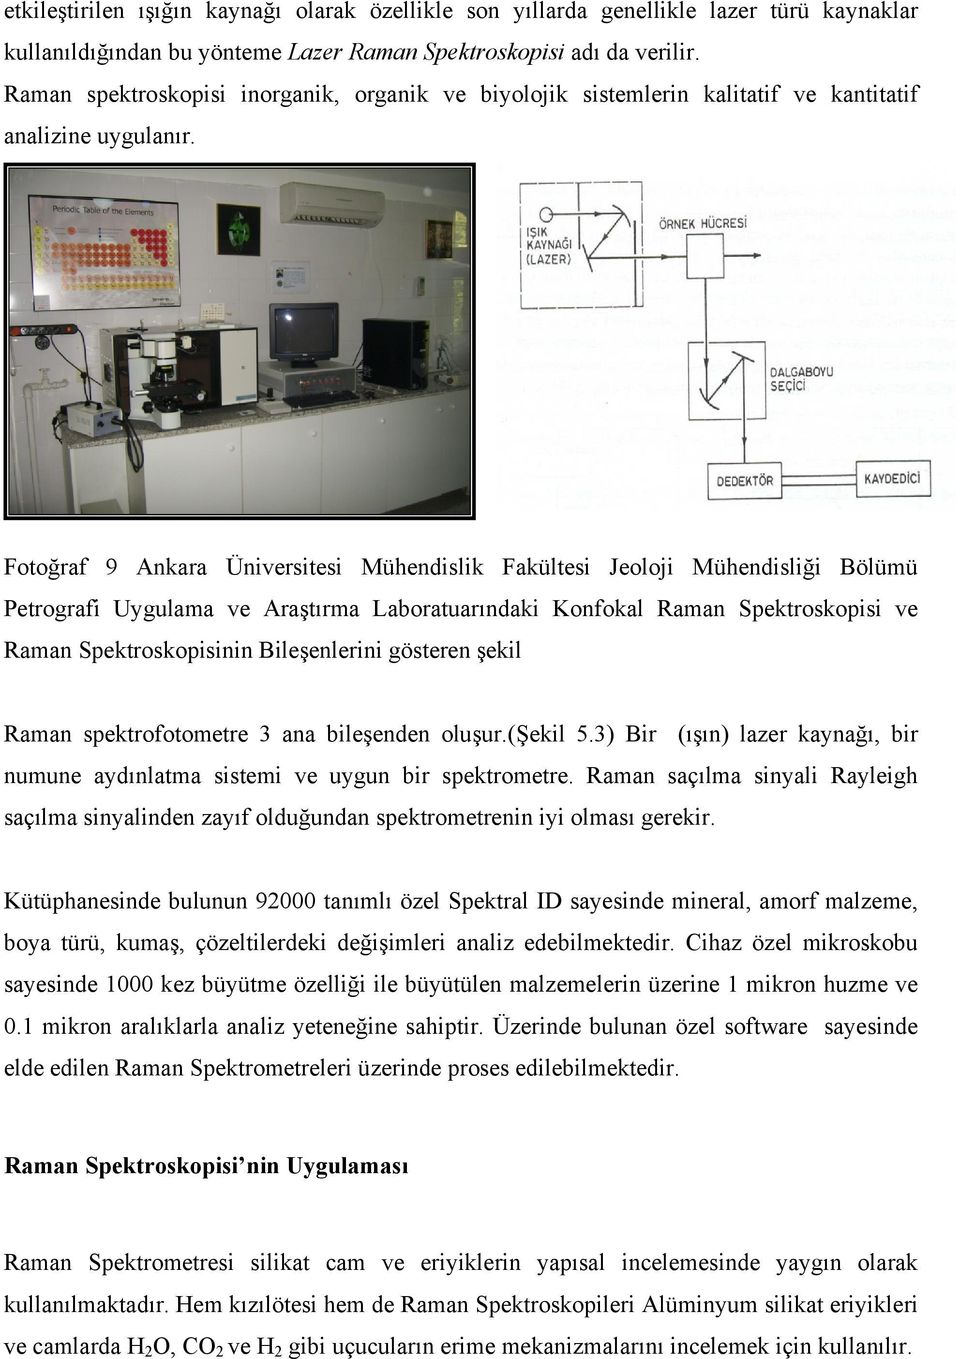 Fotoğraf 9 Ankara Üniversitesi Mühendislik Fakültesi Jeoloji Mühendisliği Bölümü Petrografi Uygulama ve Araştırma Laboratuarındaki Konfokal Raman Spektroskopisi ve Raman Spektroskopisinin